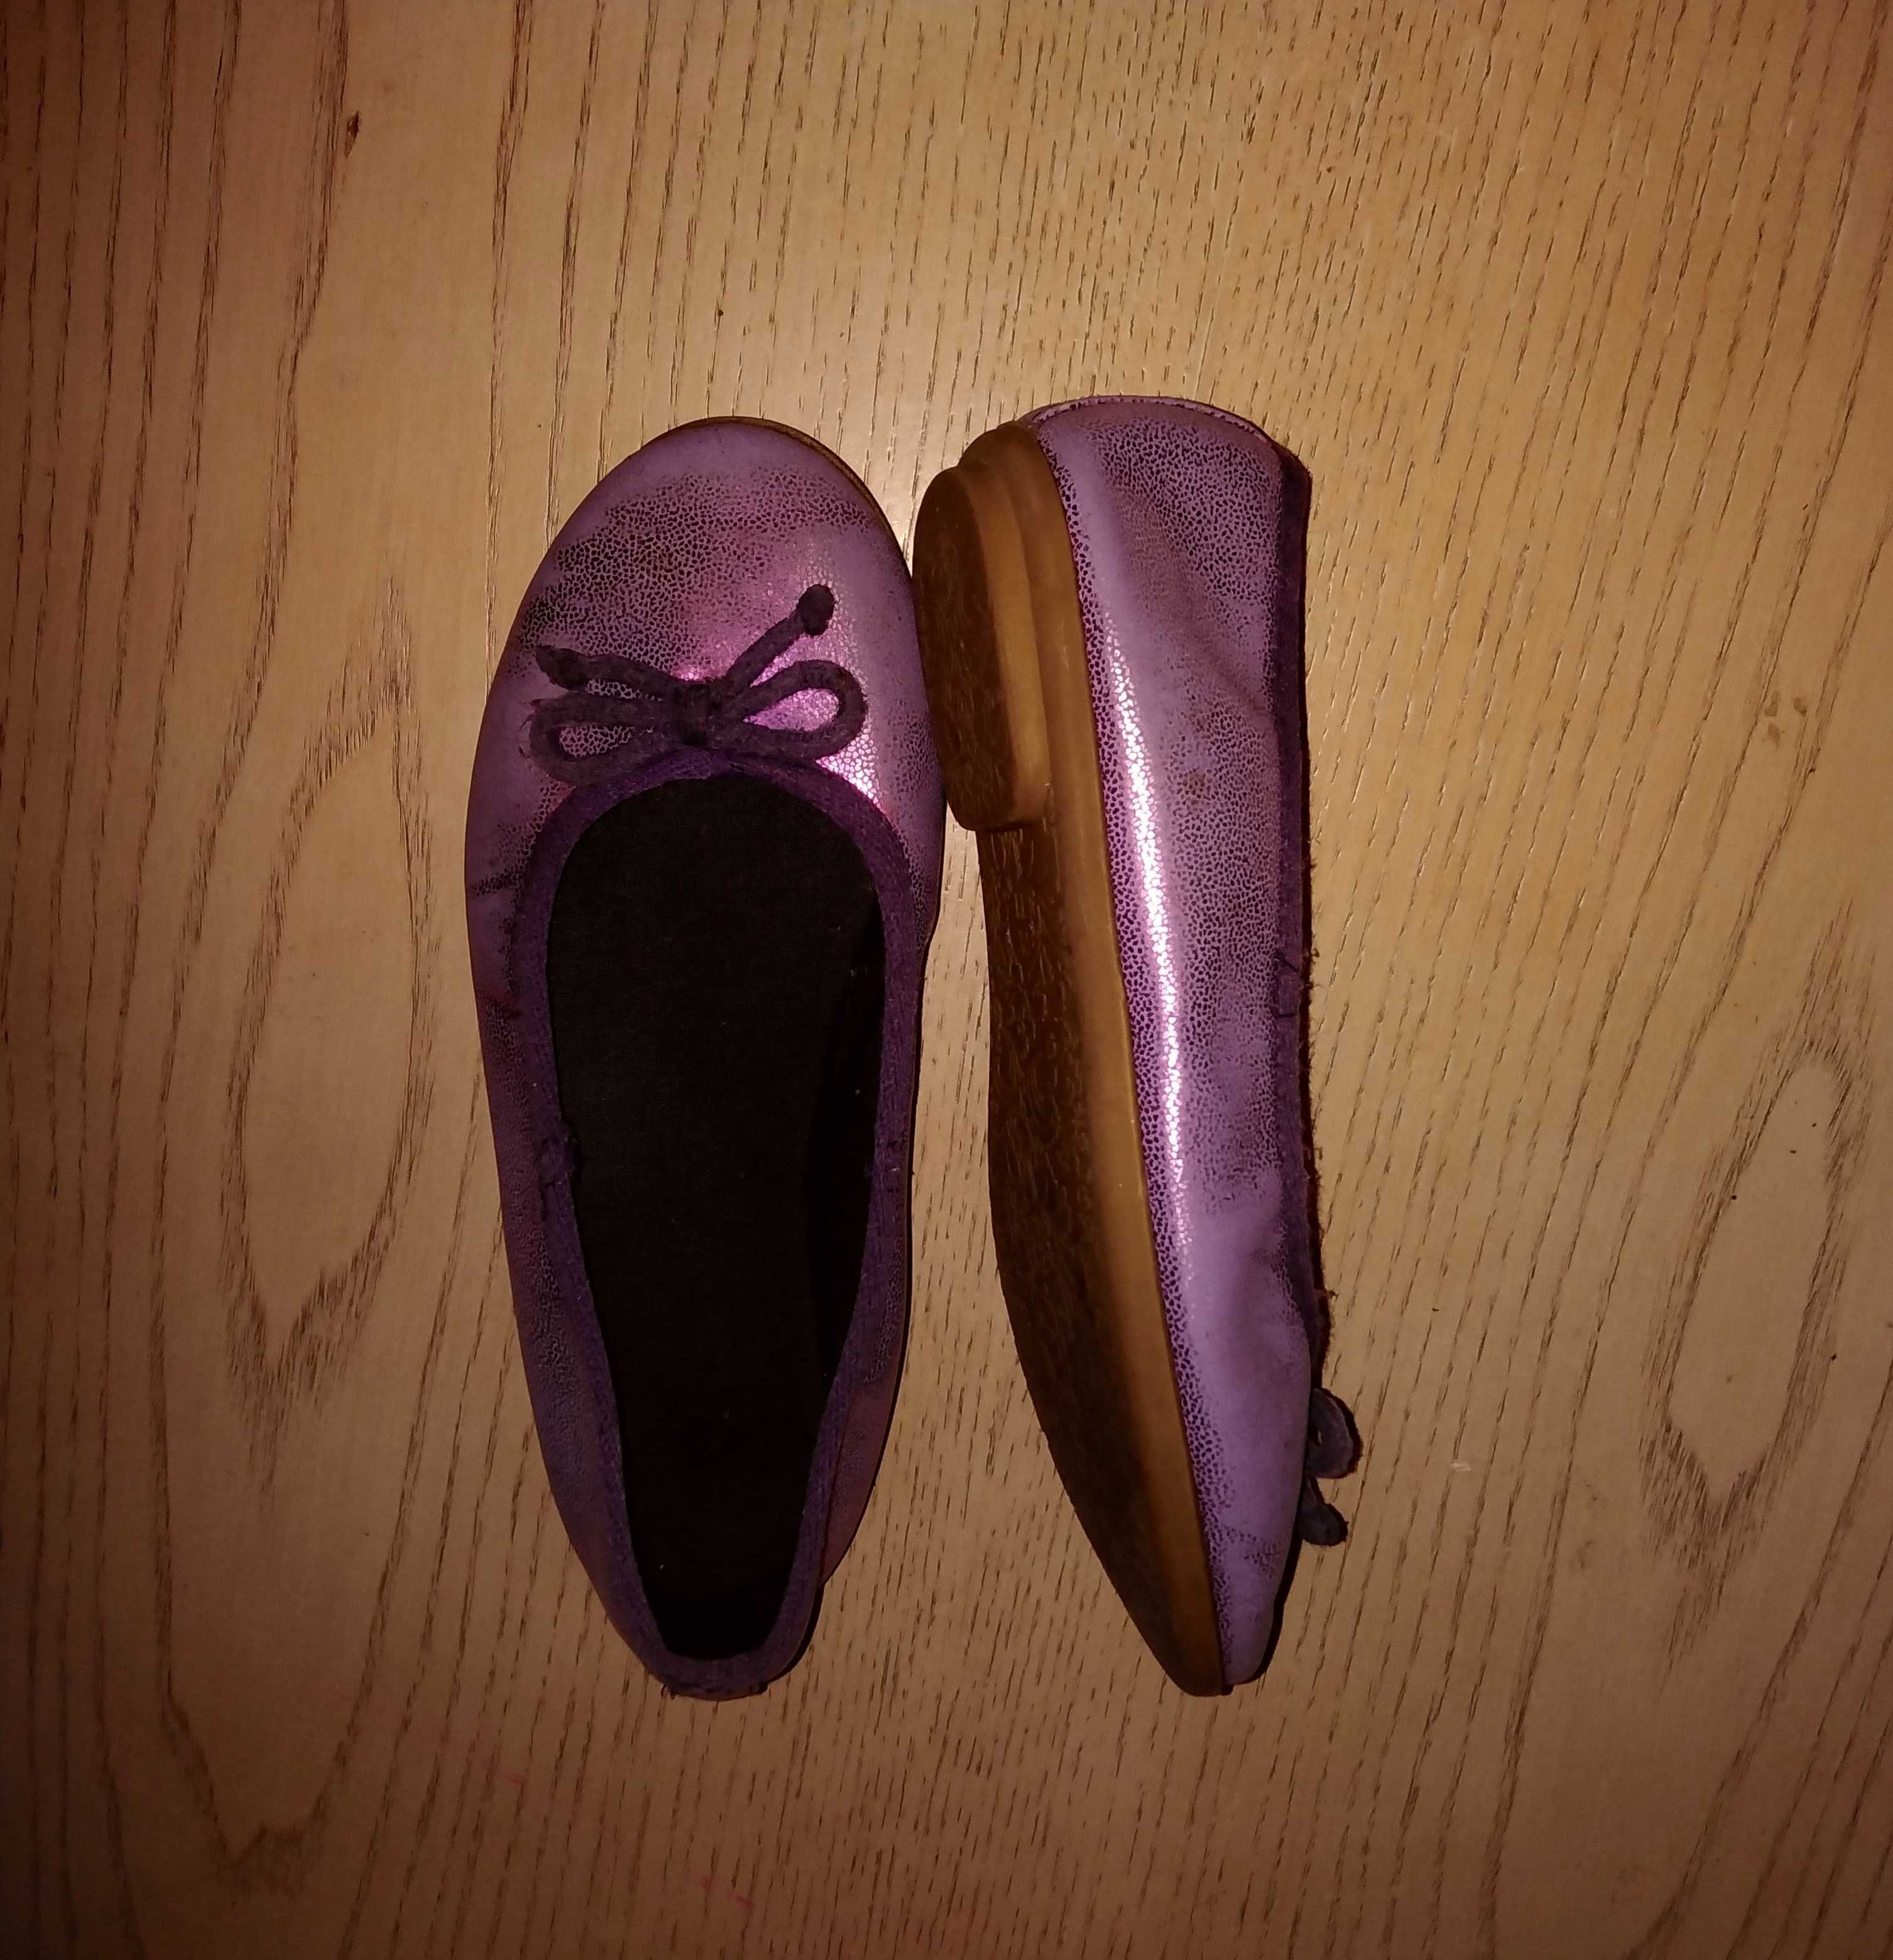 Pantofi / Balerini mar. 29, foarte frumosi